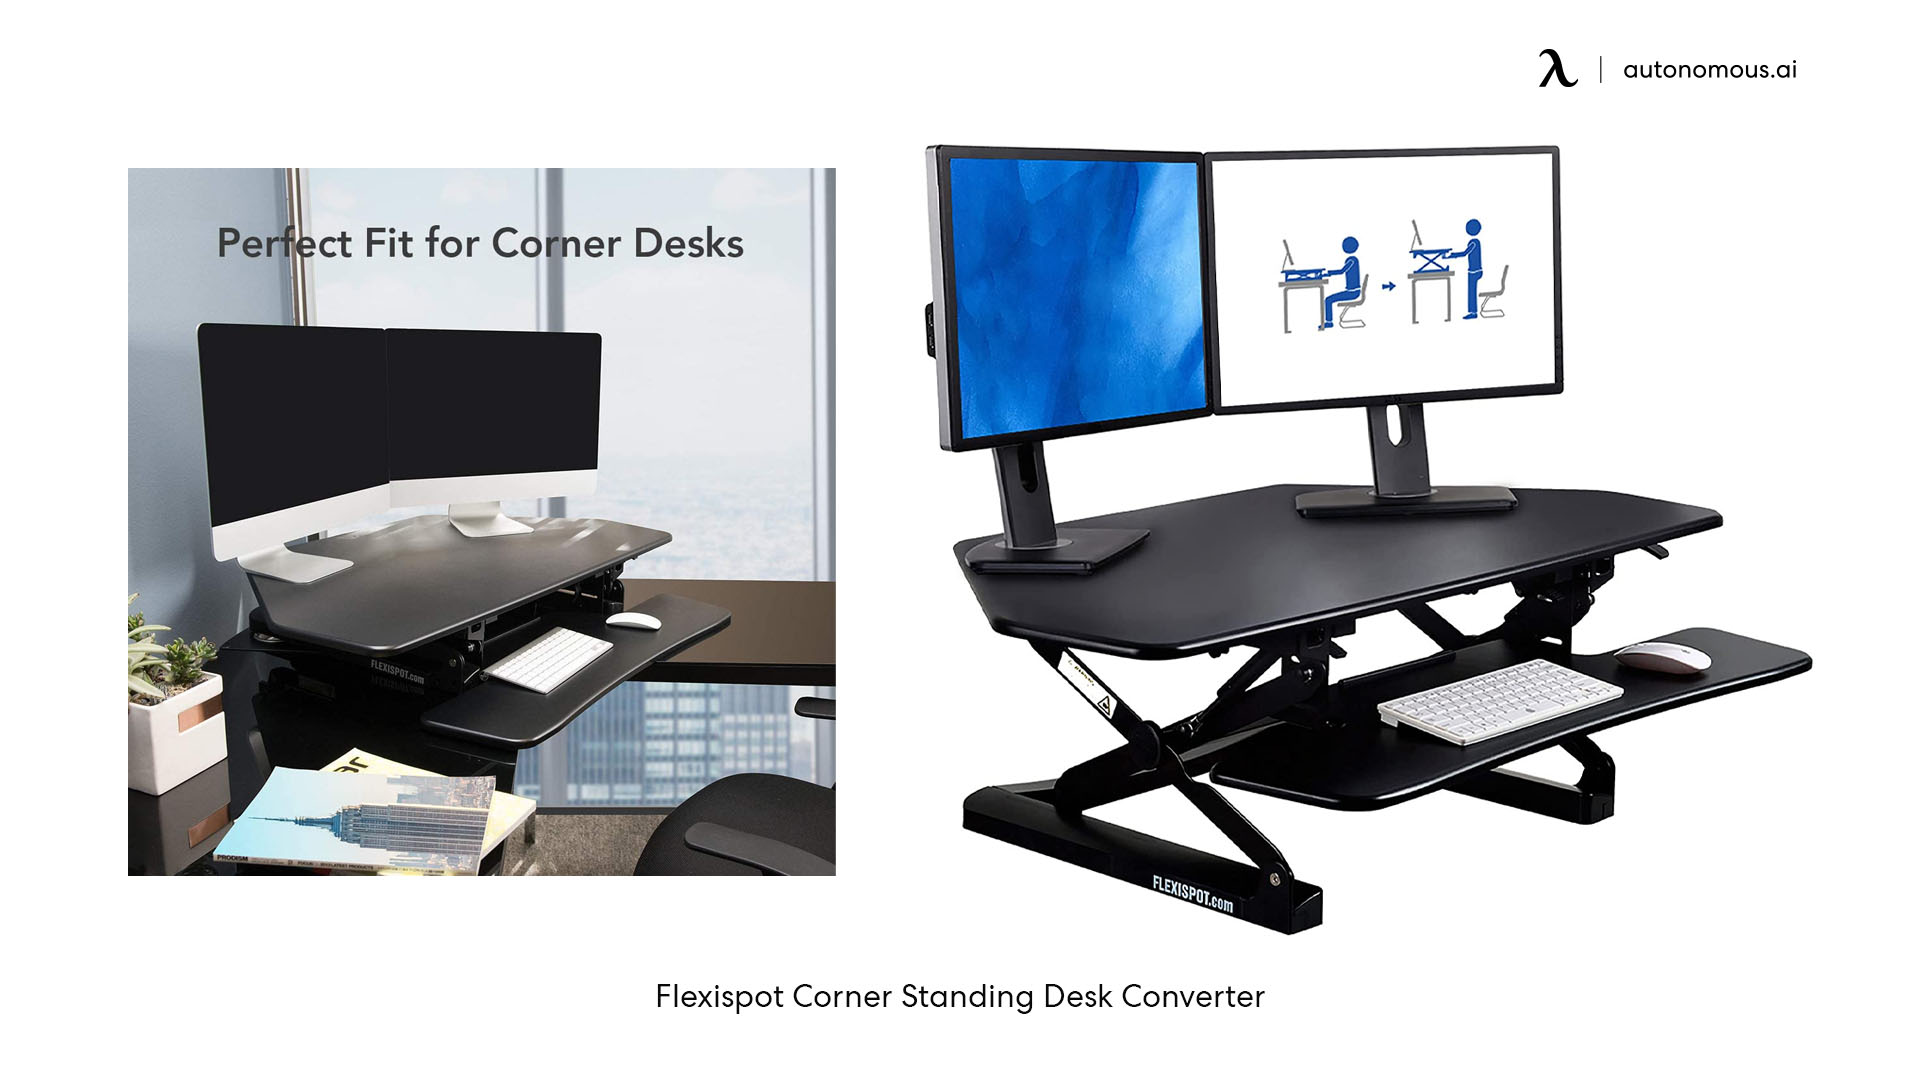 Flexispot Corner Standing Desk Converter